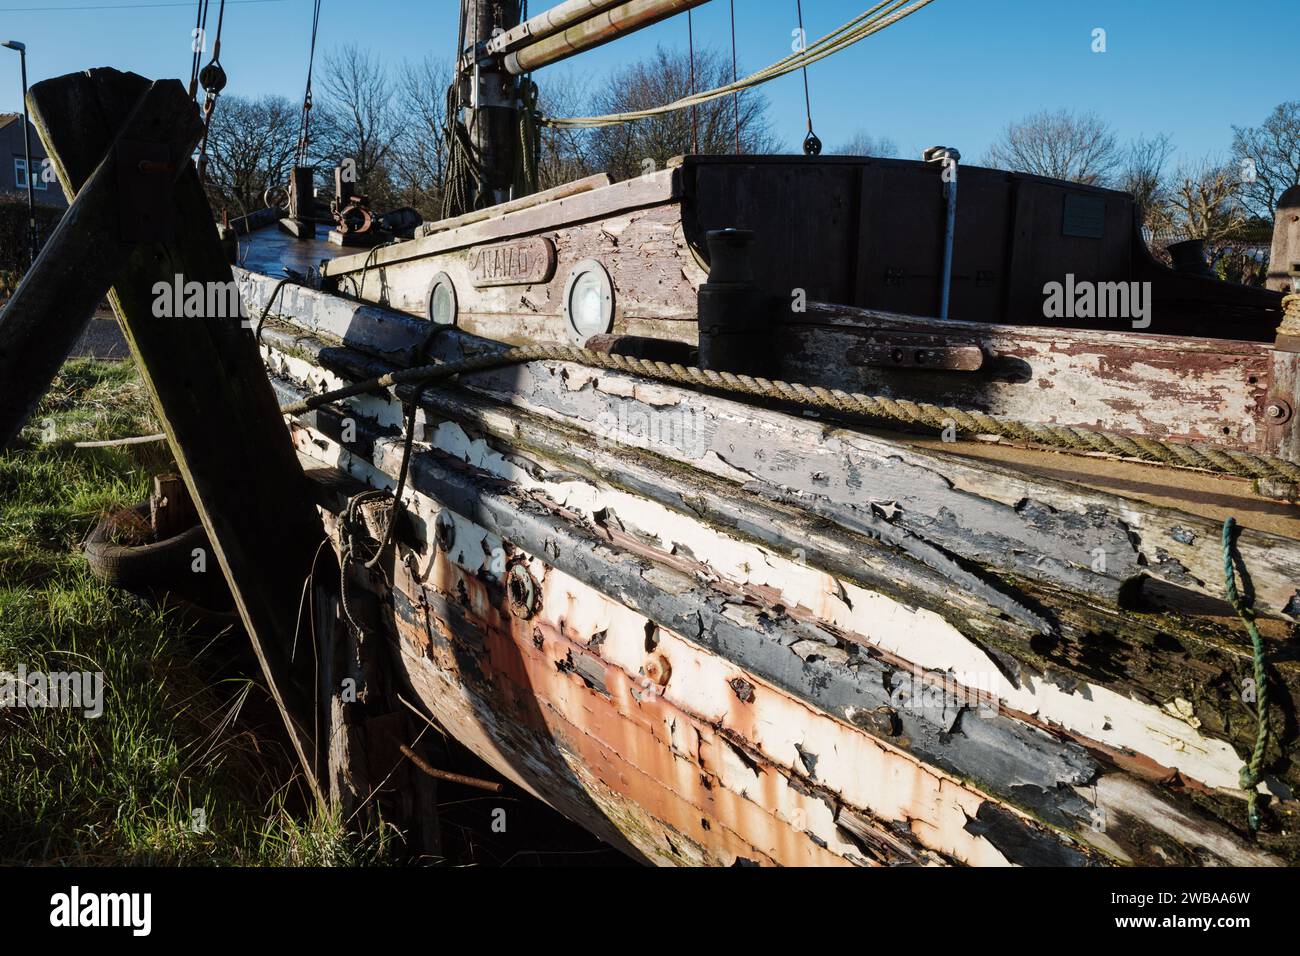 Nahaufnahme der Seite eines alten hölzernen Schiffes, das Rostflecken und verfaulte Hölzer abblättert Stockfoto